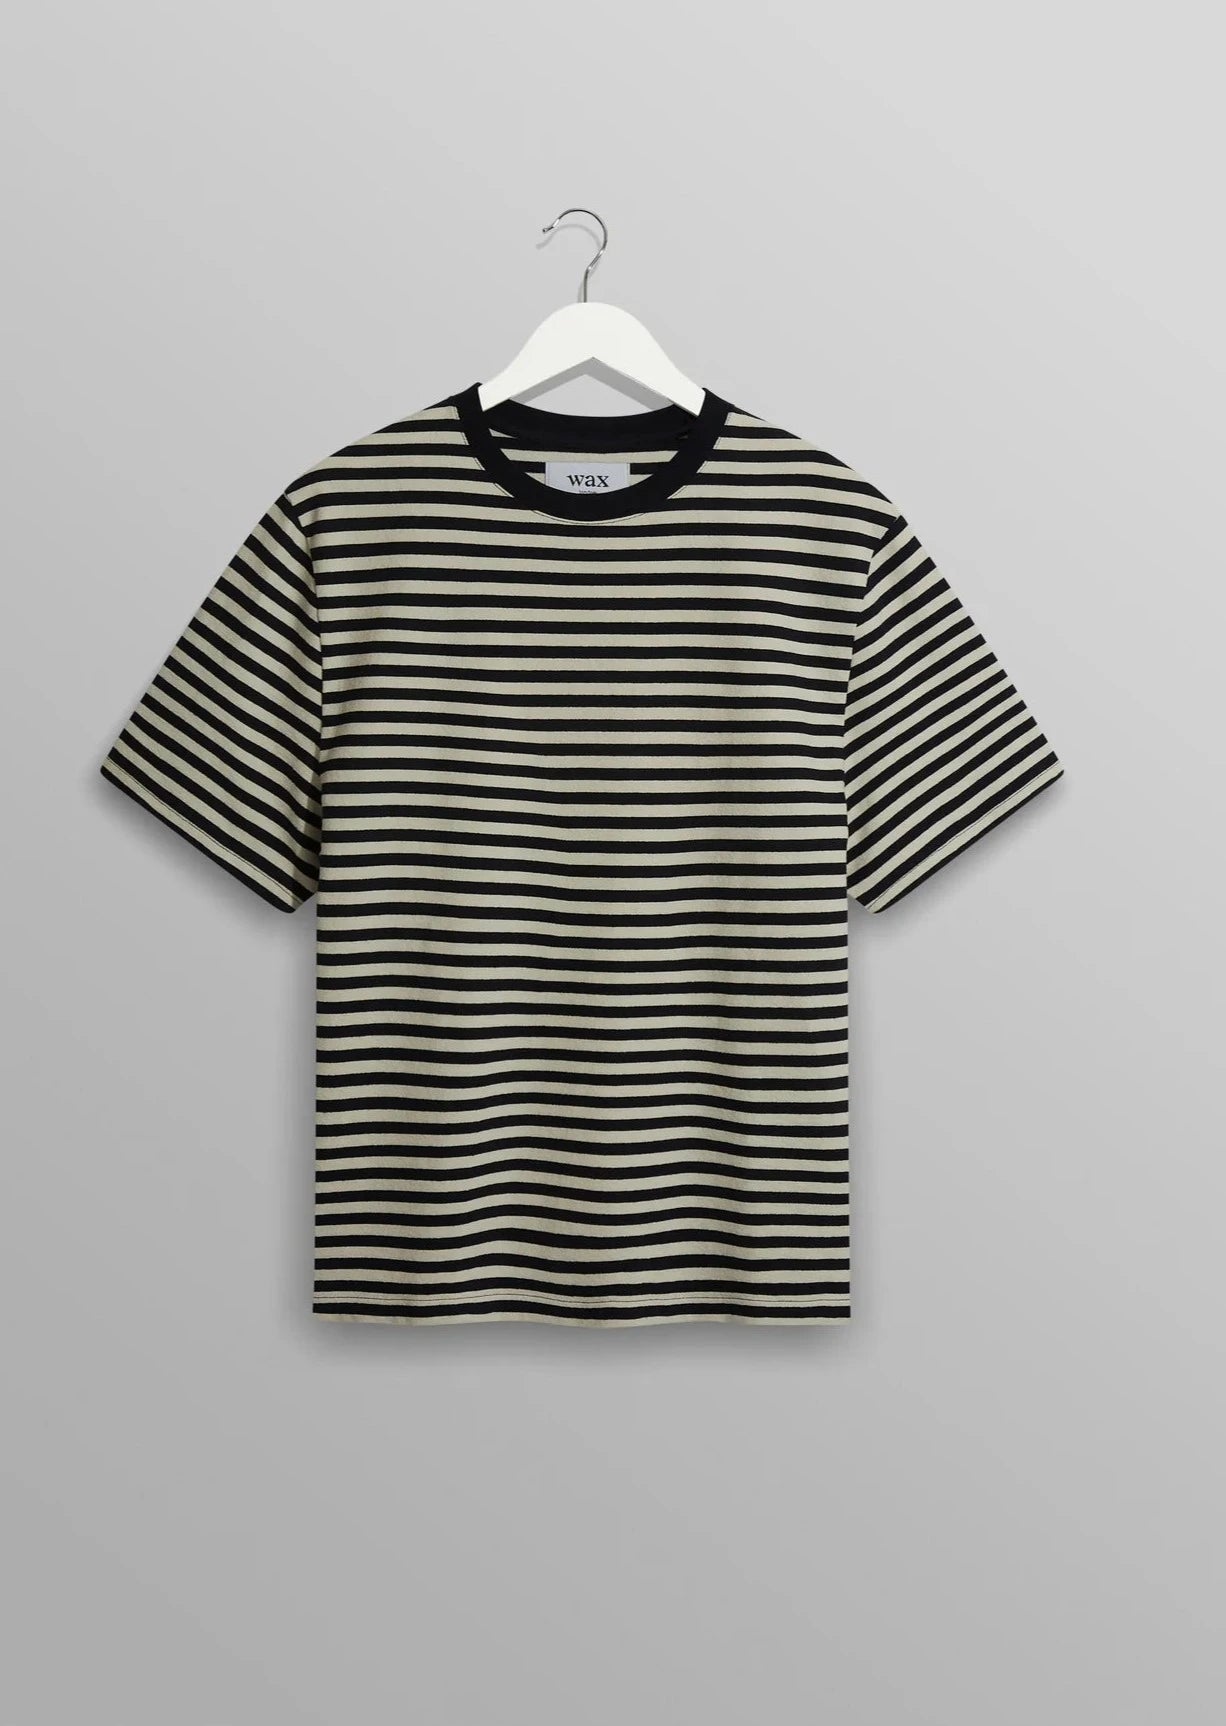 Dean S/S Tee T Shirt Wax London Navy/Ecru S 